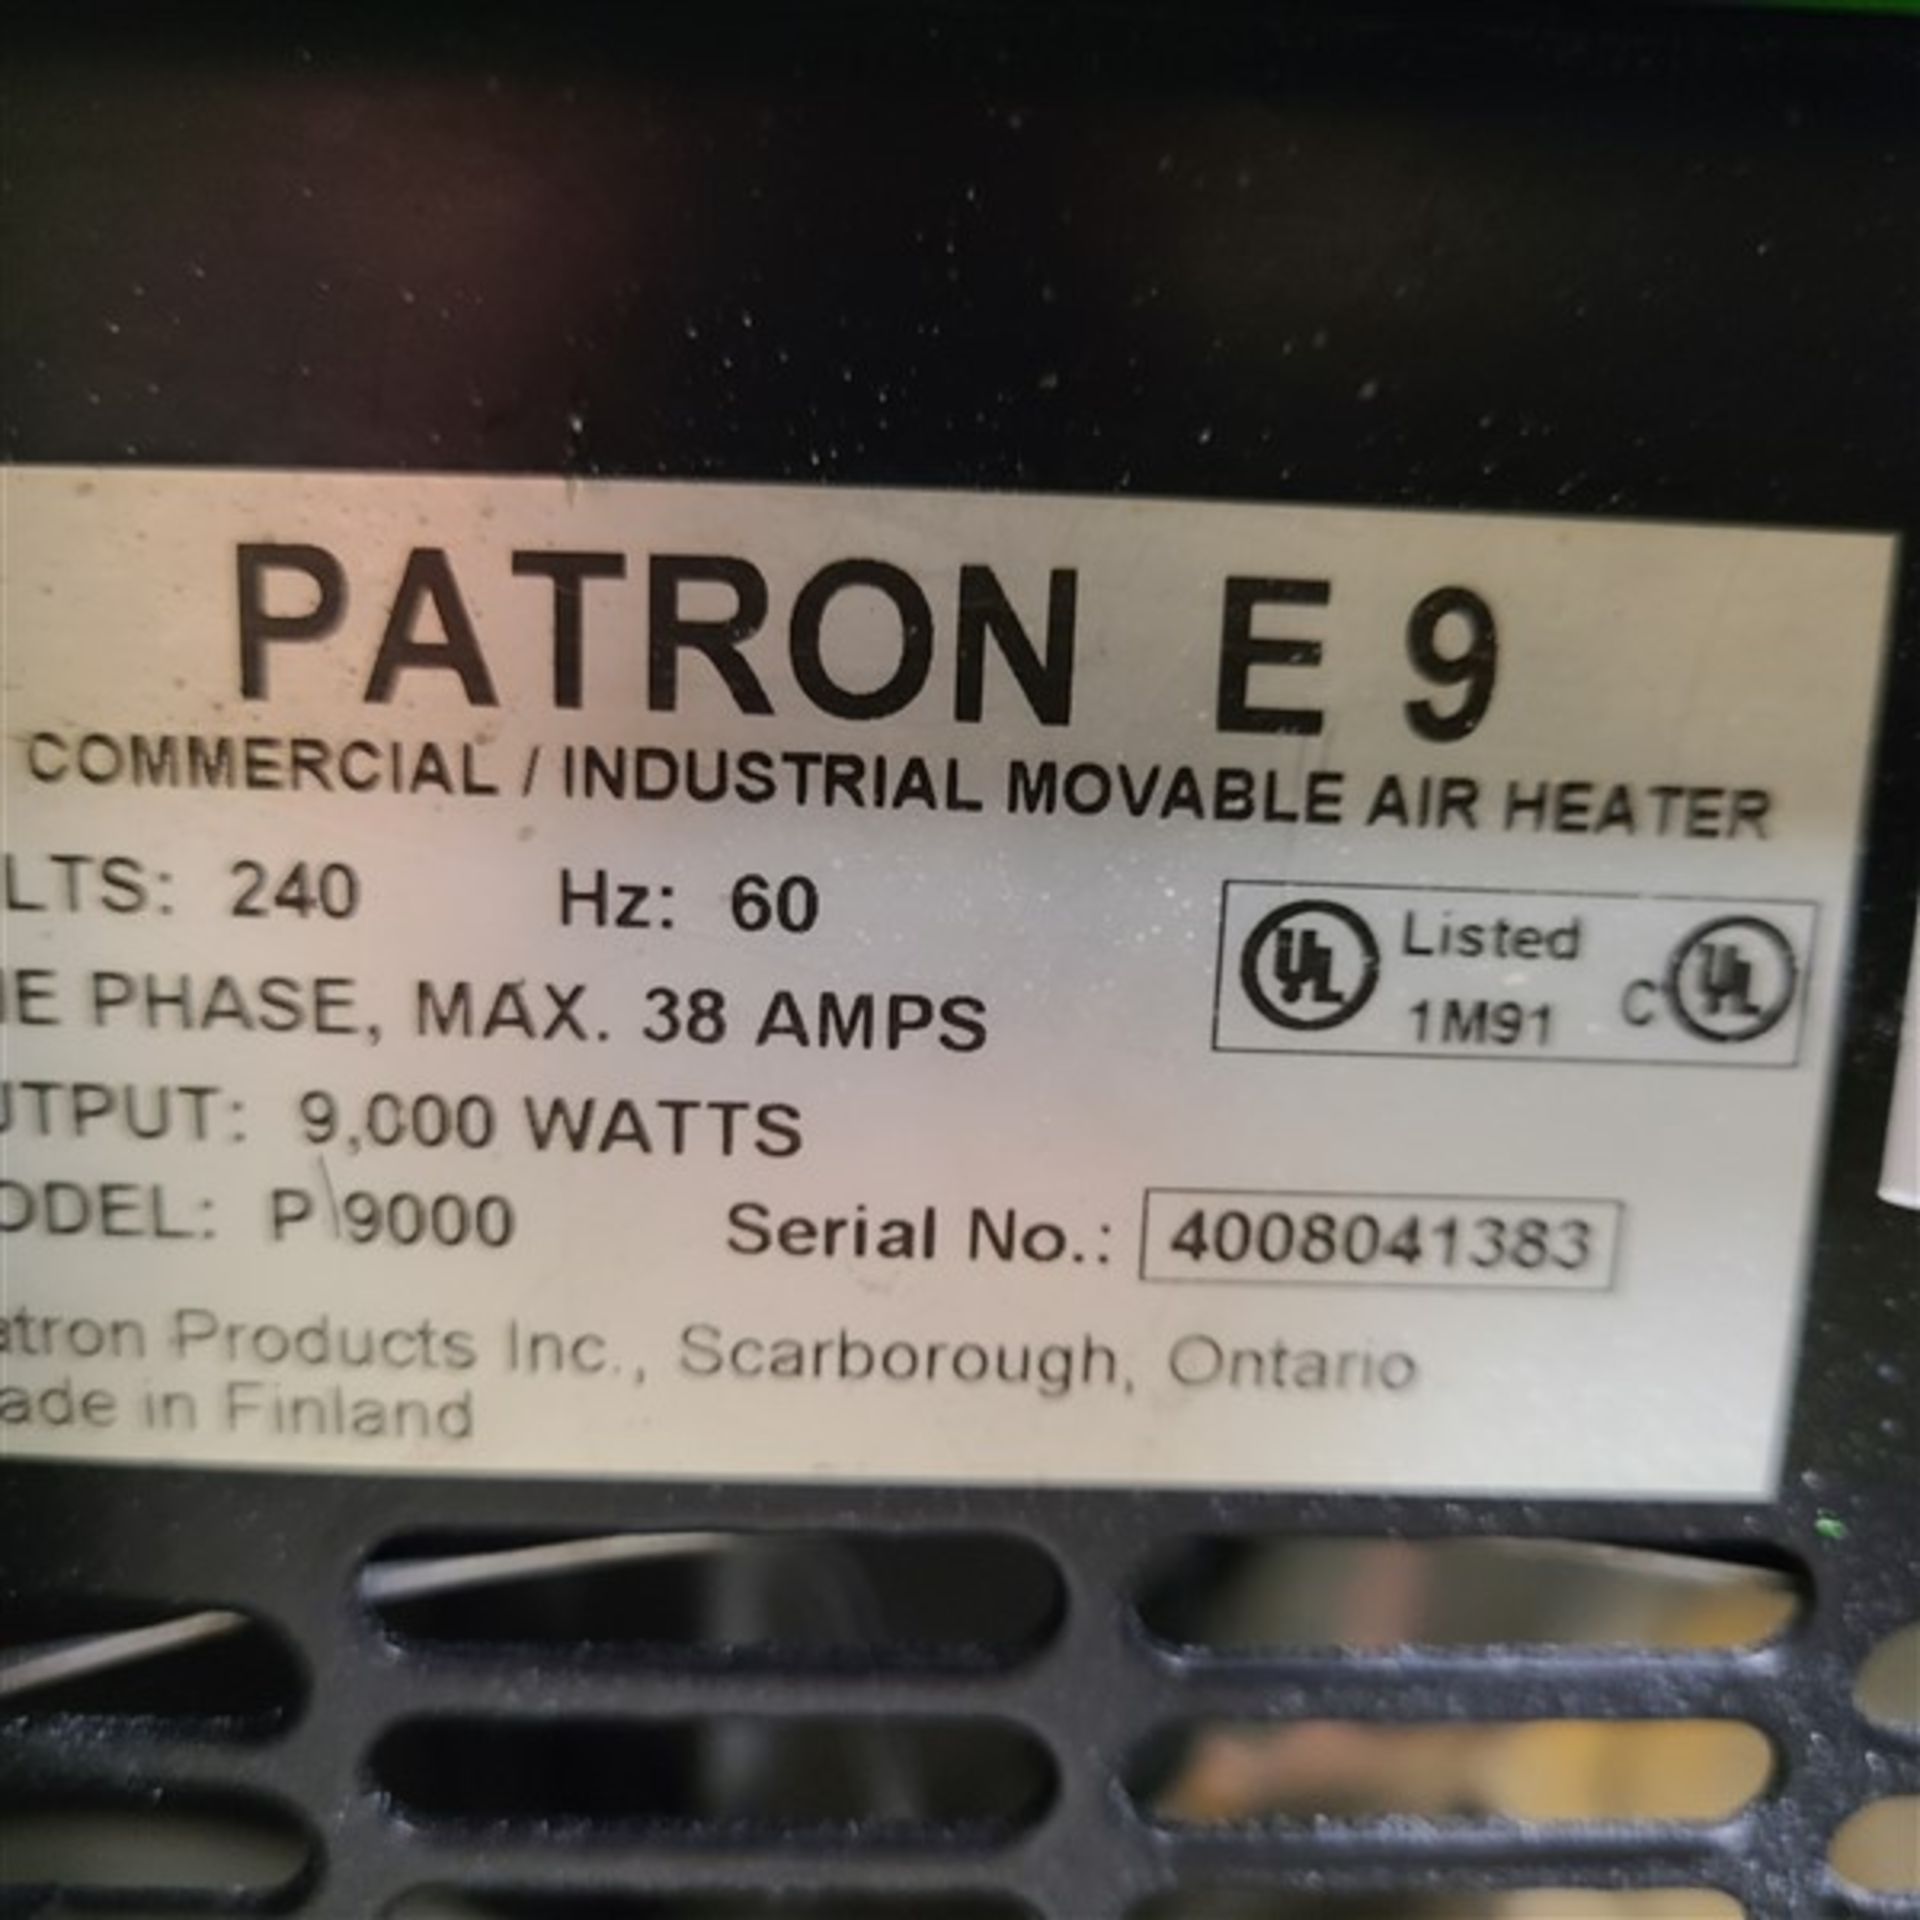 PATRON E9 MOVABLE AIR HEATER, 240V/1PH, 9,000 WATT - Image 2 of 2